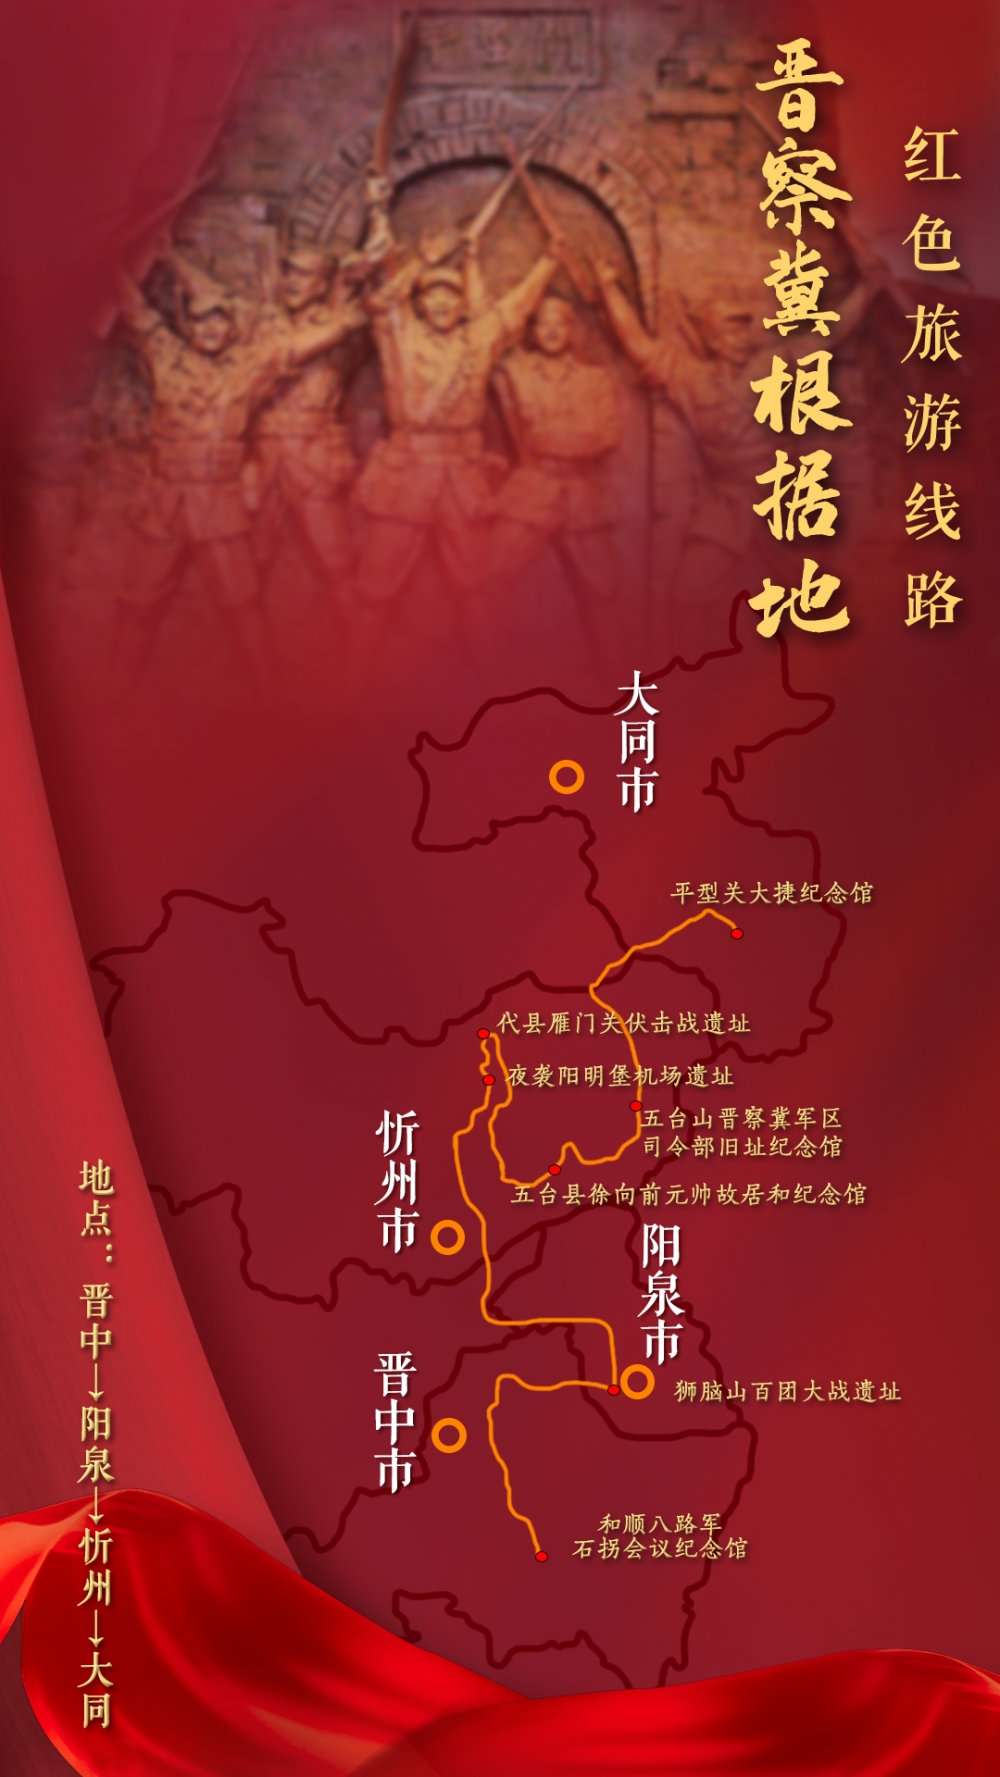 山西太原举行红色芳华清廉山西主题宣讲活动公布了20条红色旅游线路